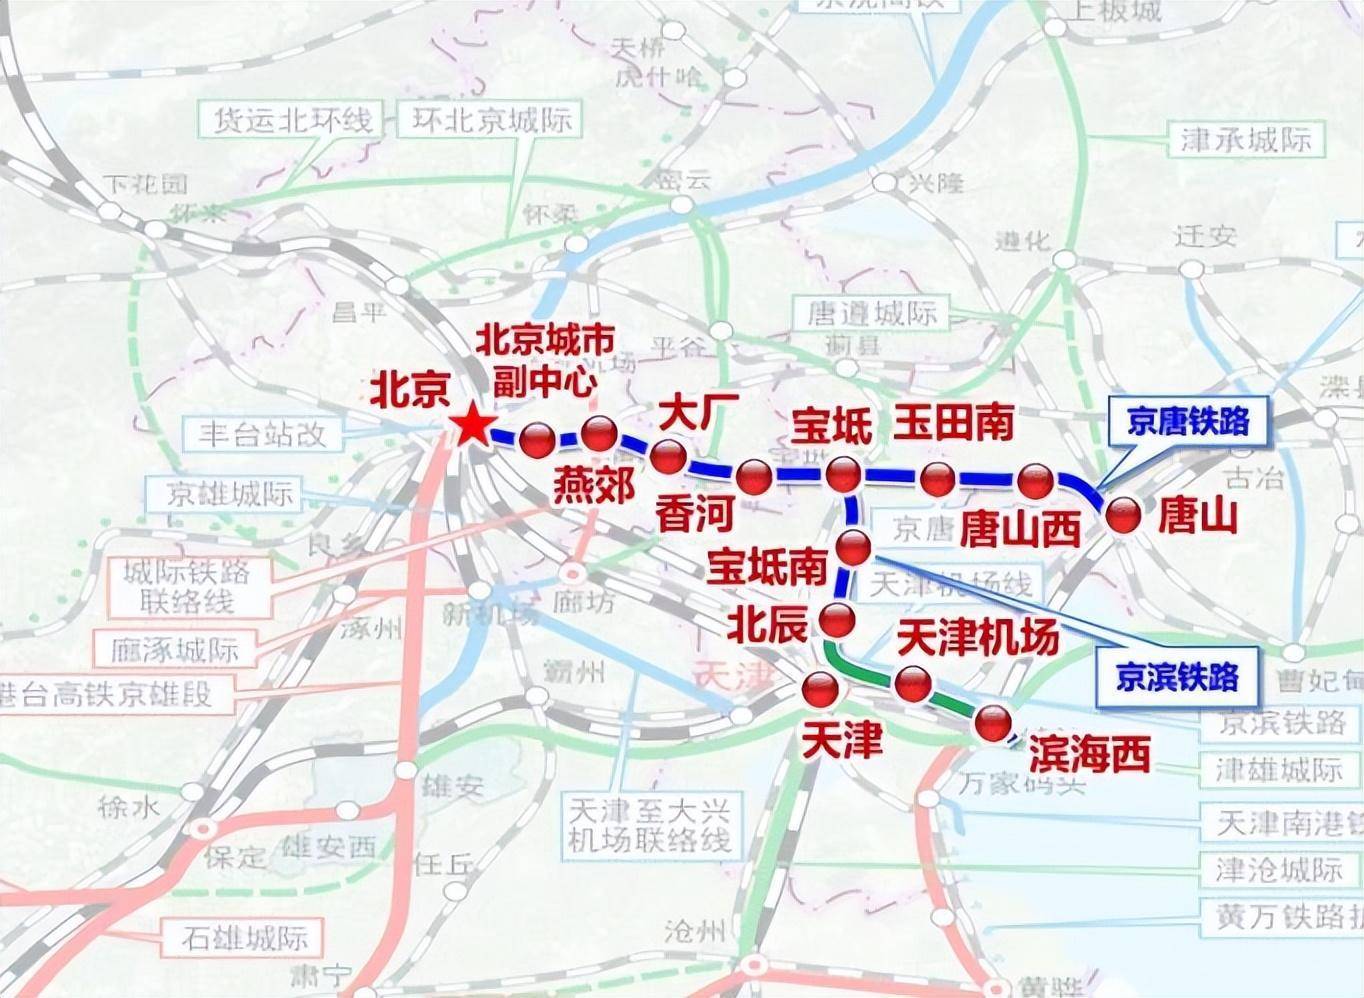 天津建一条城际铁路,长97